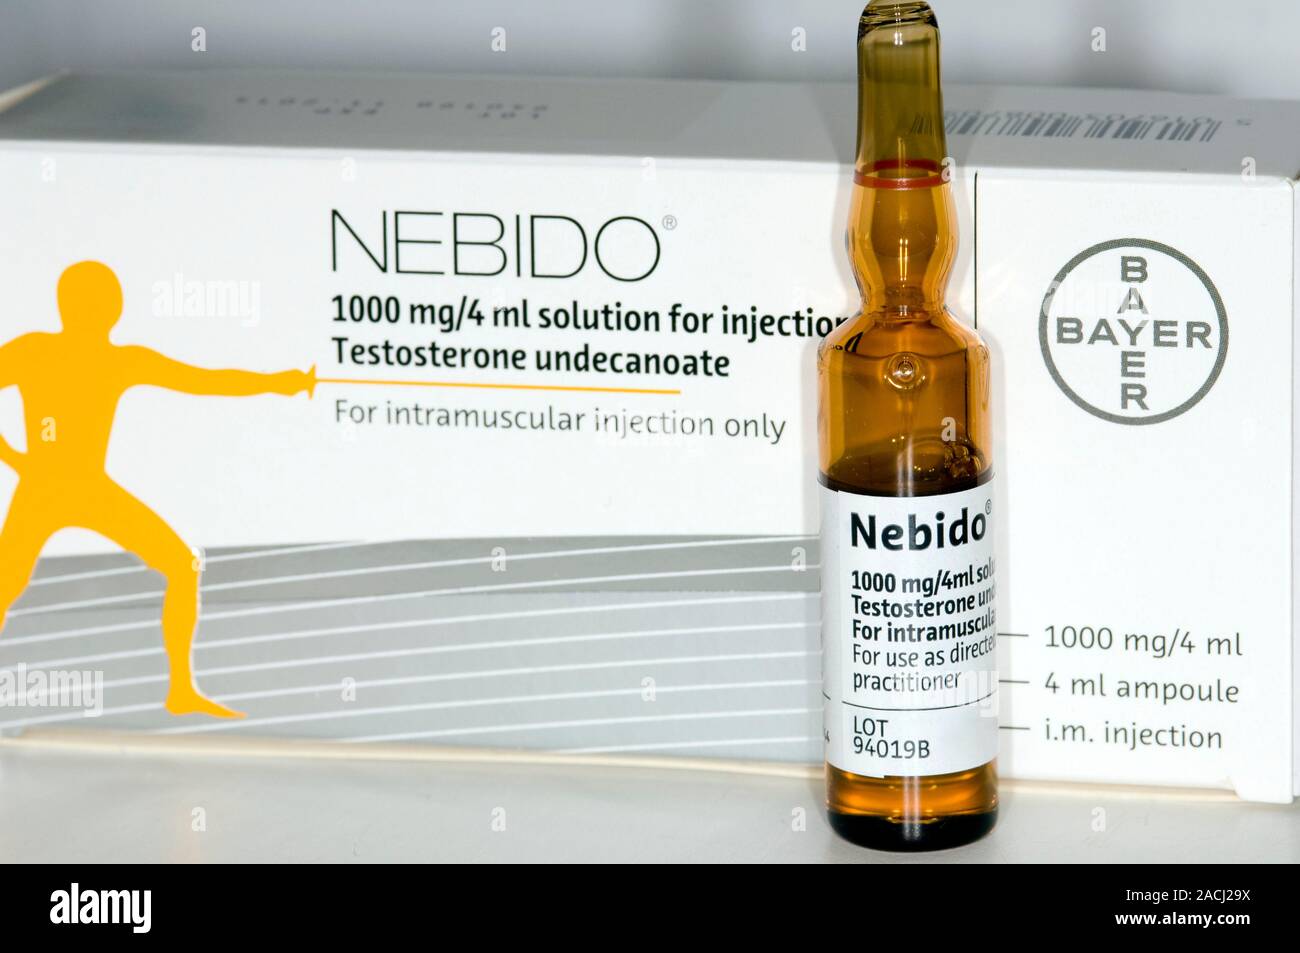 Ampoule de Nebido (testostérone) médicaments pour injection  intramusculaire. Nebido contient un ingrédient actif, le testostérone  undecanoate et peut être donné comme Photo Stock - Alamy